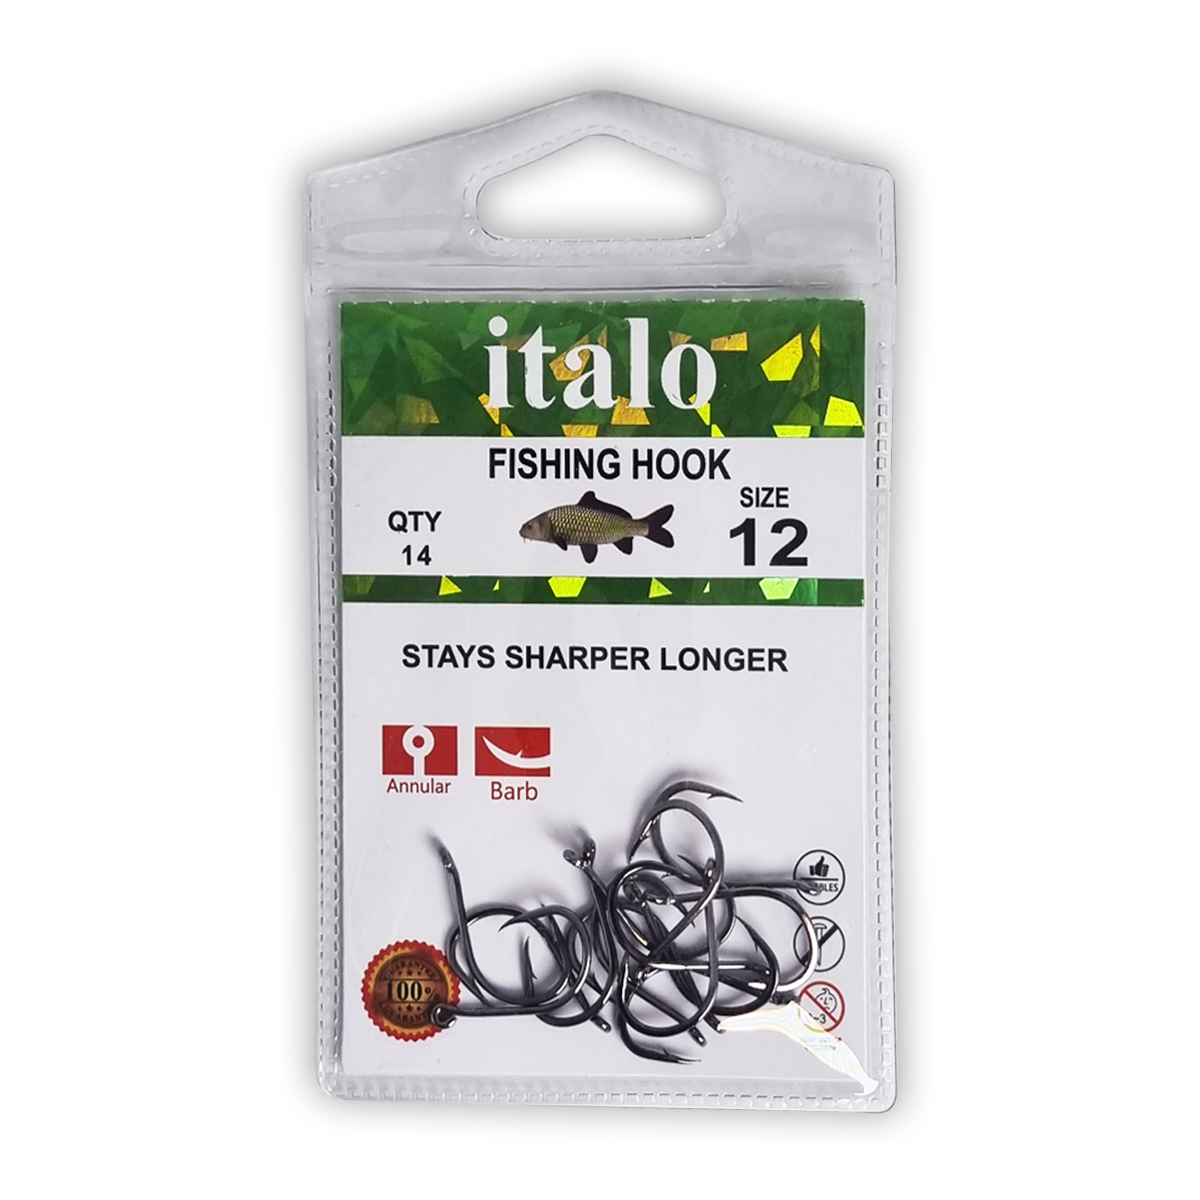 Fishing Hooks, Stay Sharper Longer, Pack of 10pcs - Size 16 - Italo - 12/14